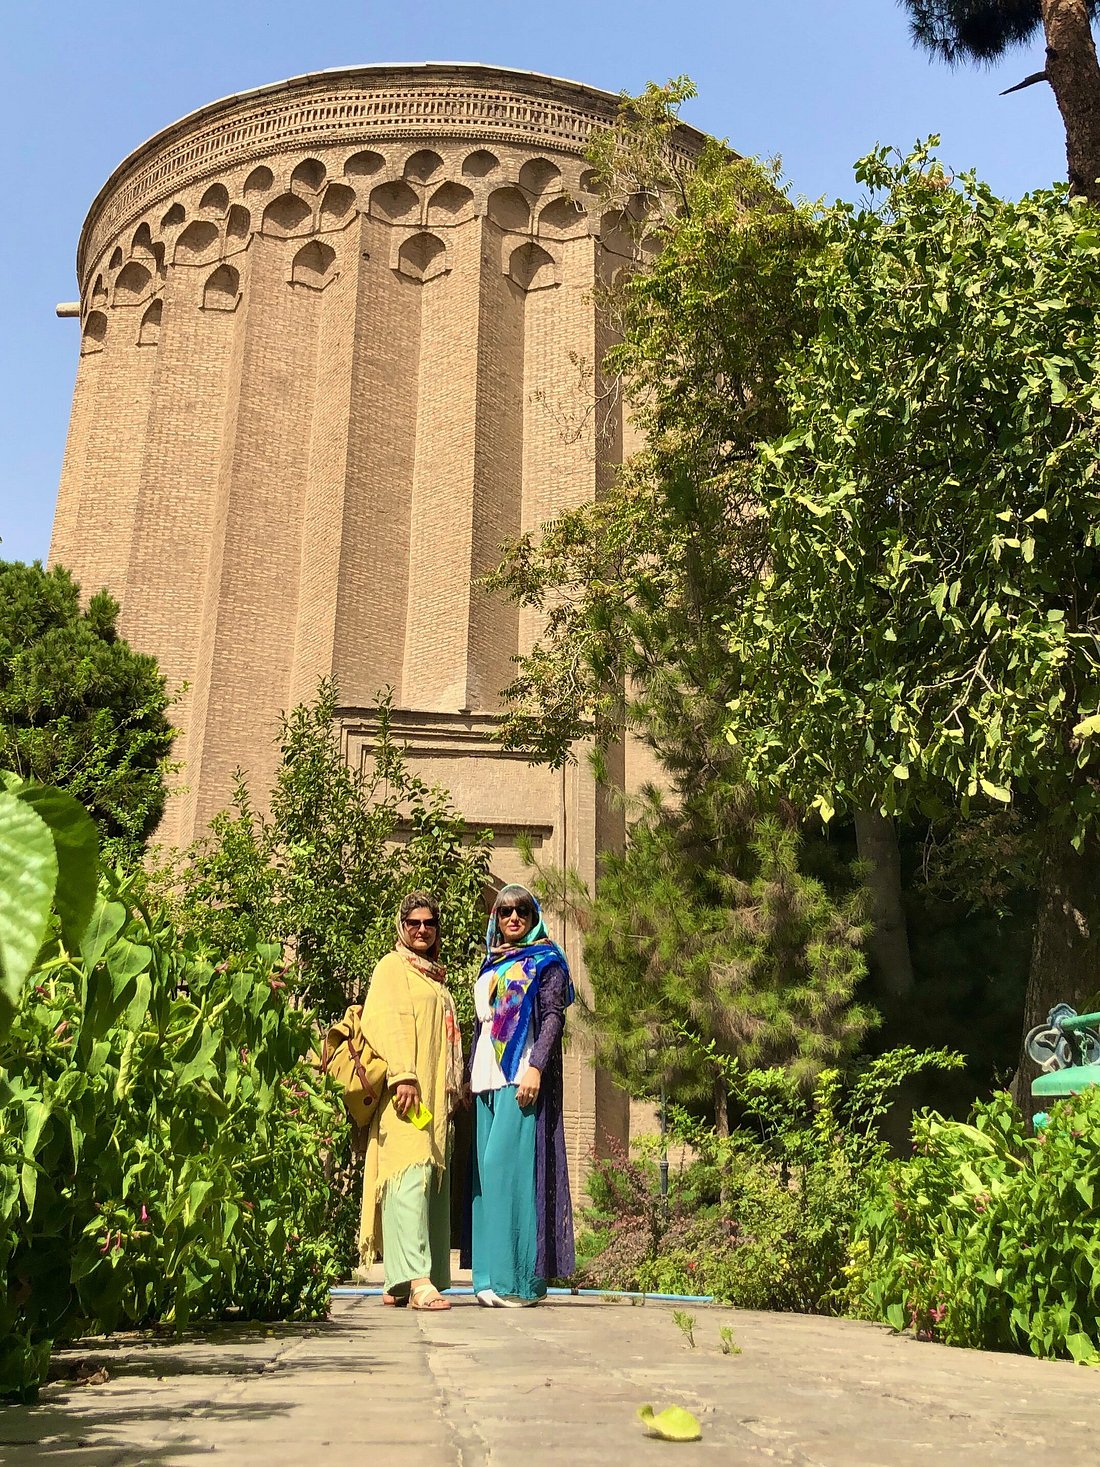 Toghrol Tower, Tehran